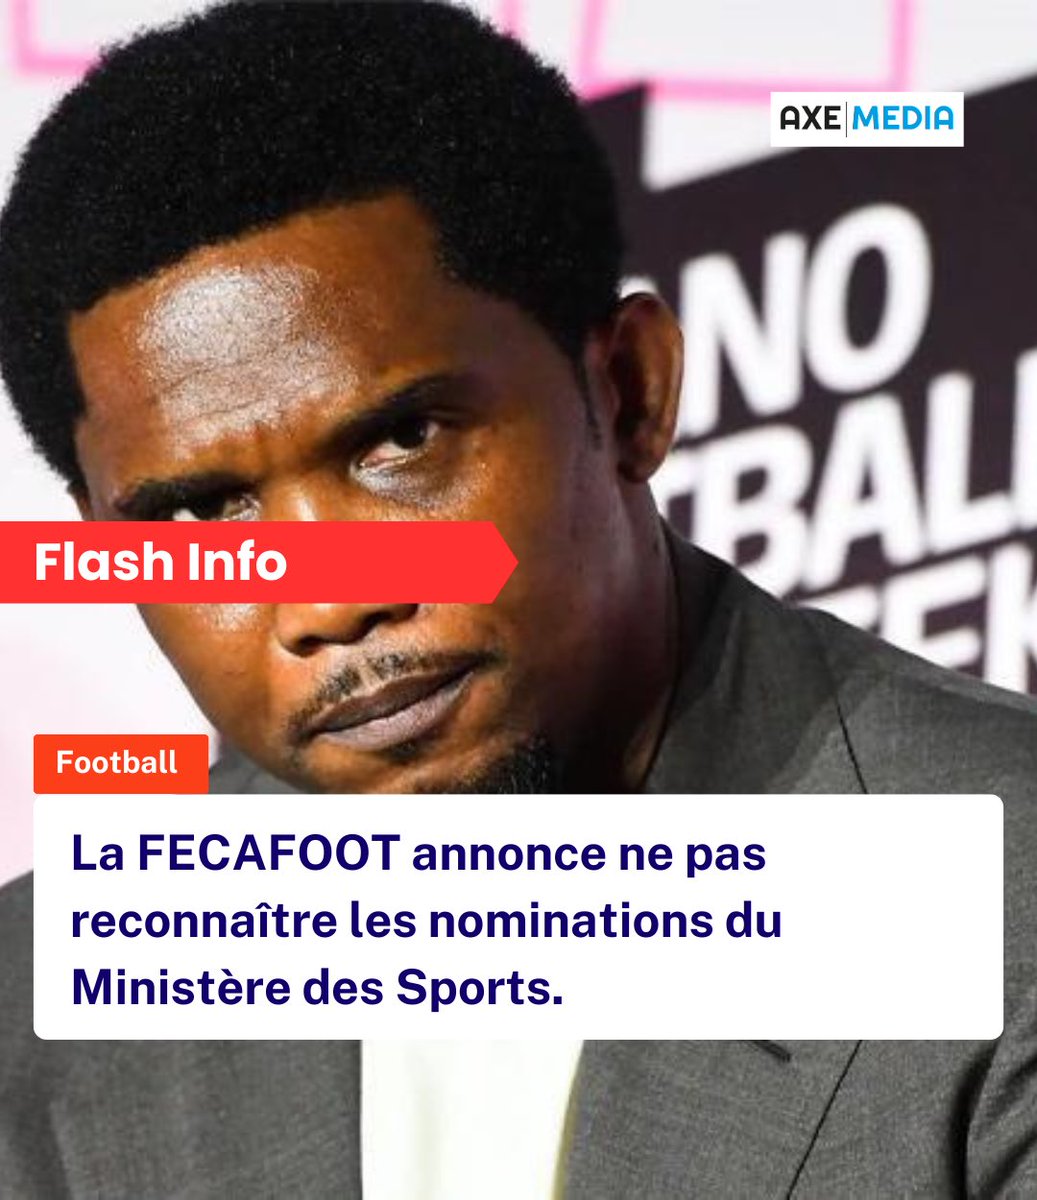 La FECAFOOT annonce ne pas reconnaître les nominations du Ministère des Sports.

#fecafoot #samueletoo #paulbiya #football #lionsindomptables🇨🇲🦁